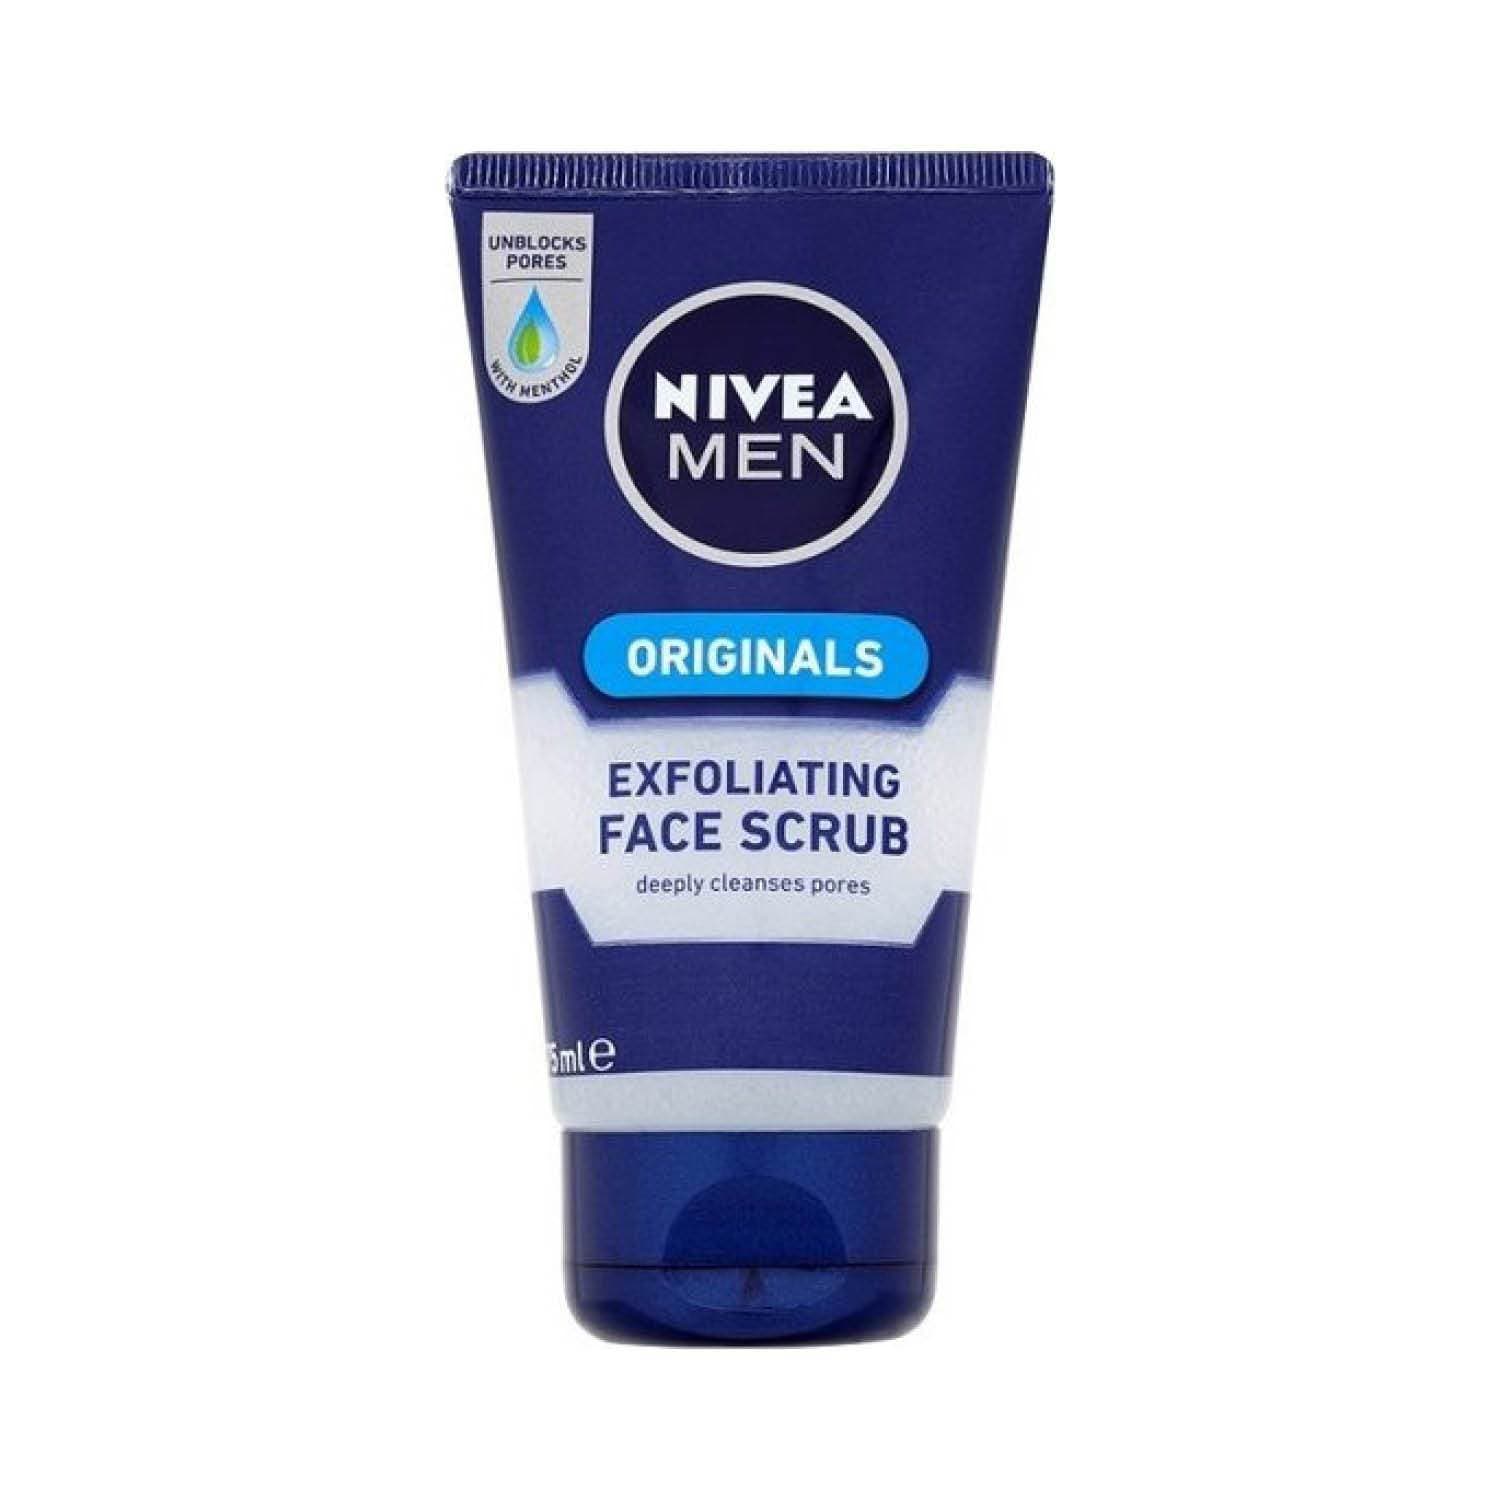 Nivea Toiletries Nivea Men Face Scrub Exfoliating, 75ml 4005808228874 110306